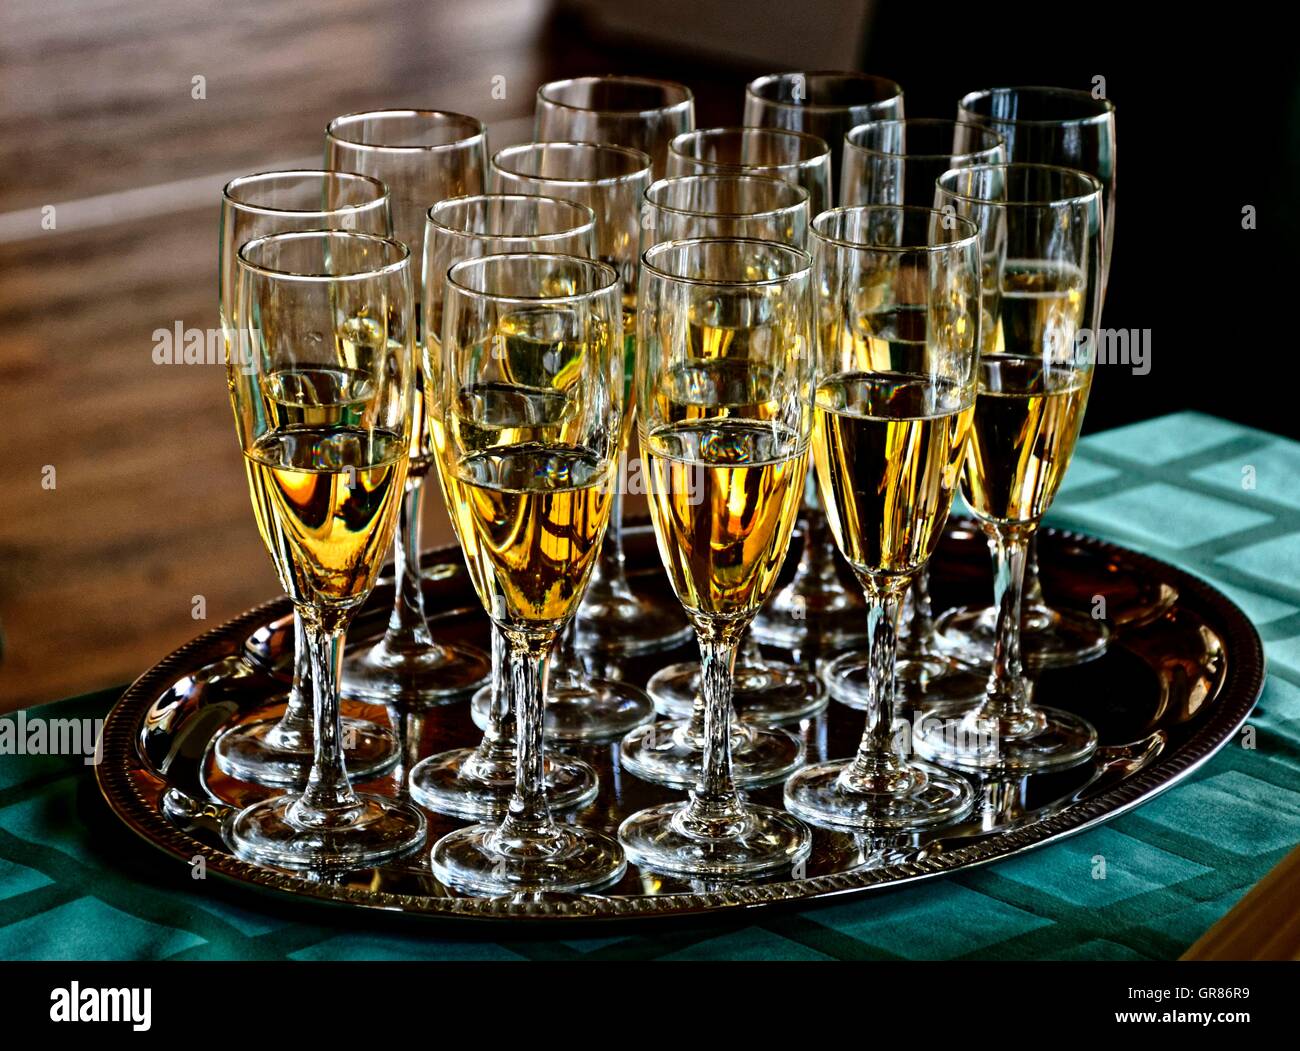 Viele Sektgläser gefüllt mit Champagner auf silbernen Tablett  Stockfotografie - Alamy